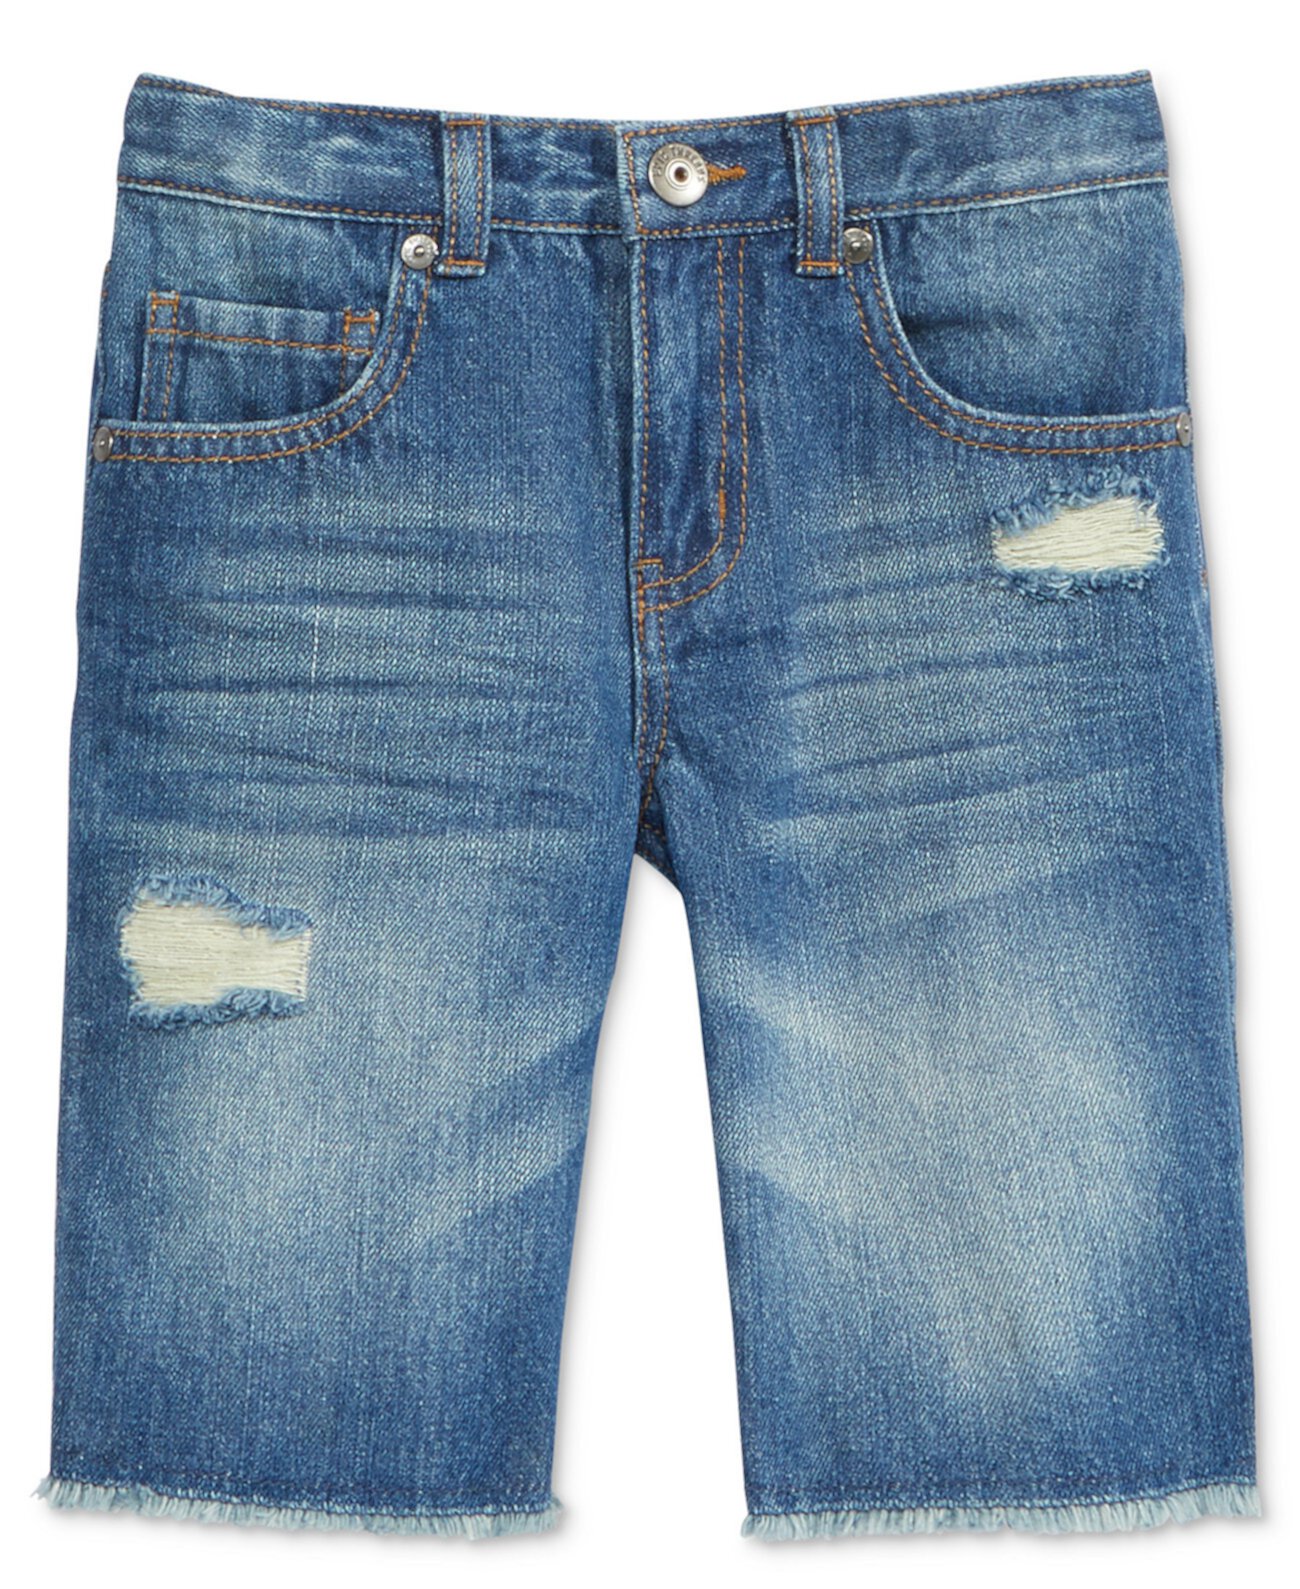 Разрушенные хлопковые джинсовые шорты, маленькие мальчики, созданные для Macy's Epic Threads